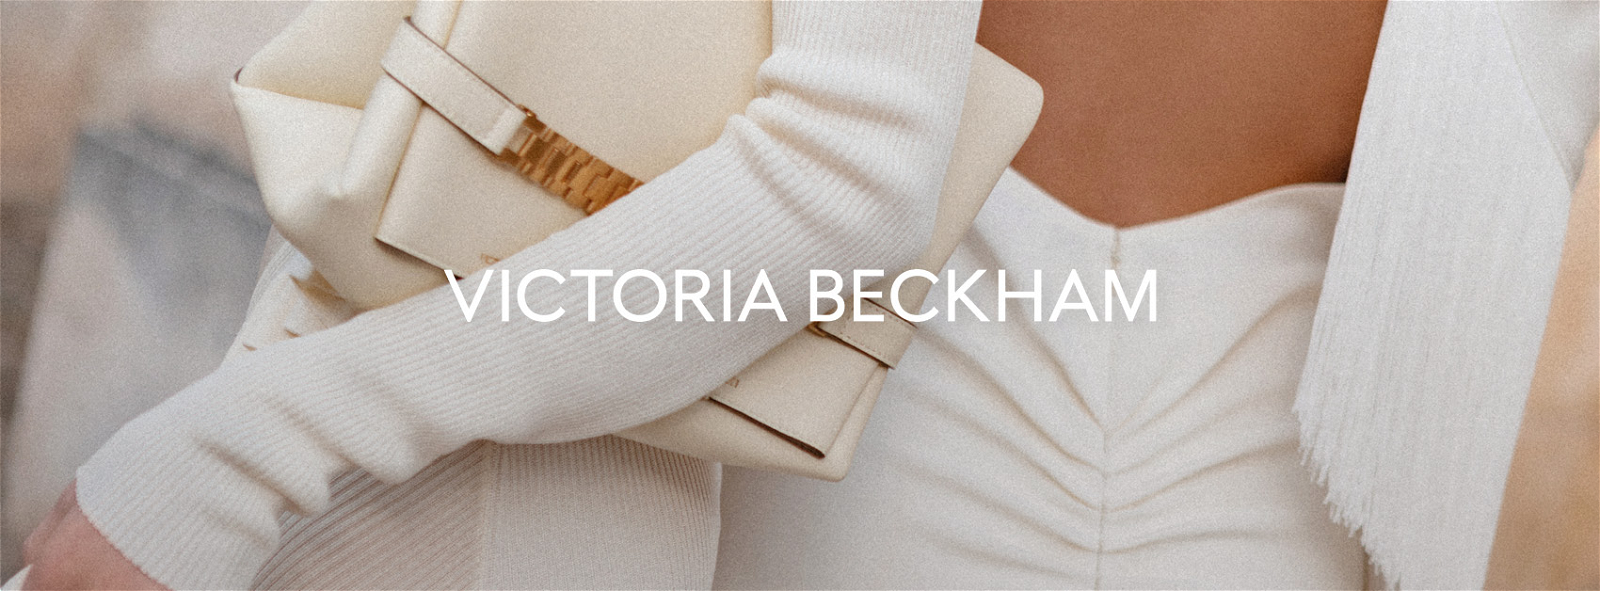 Victoria beckham.com